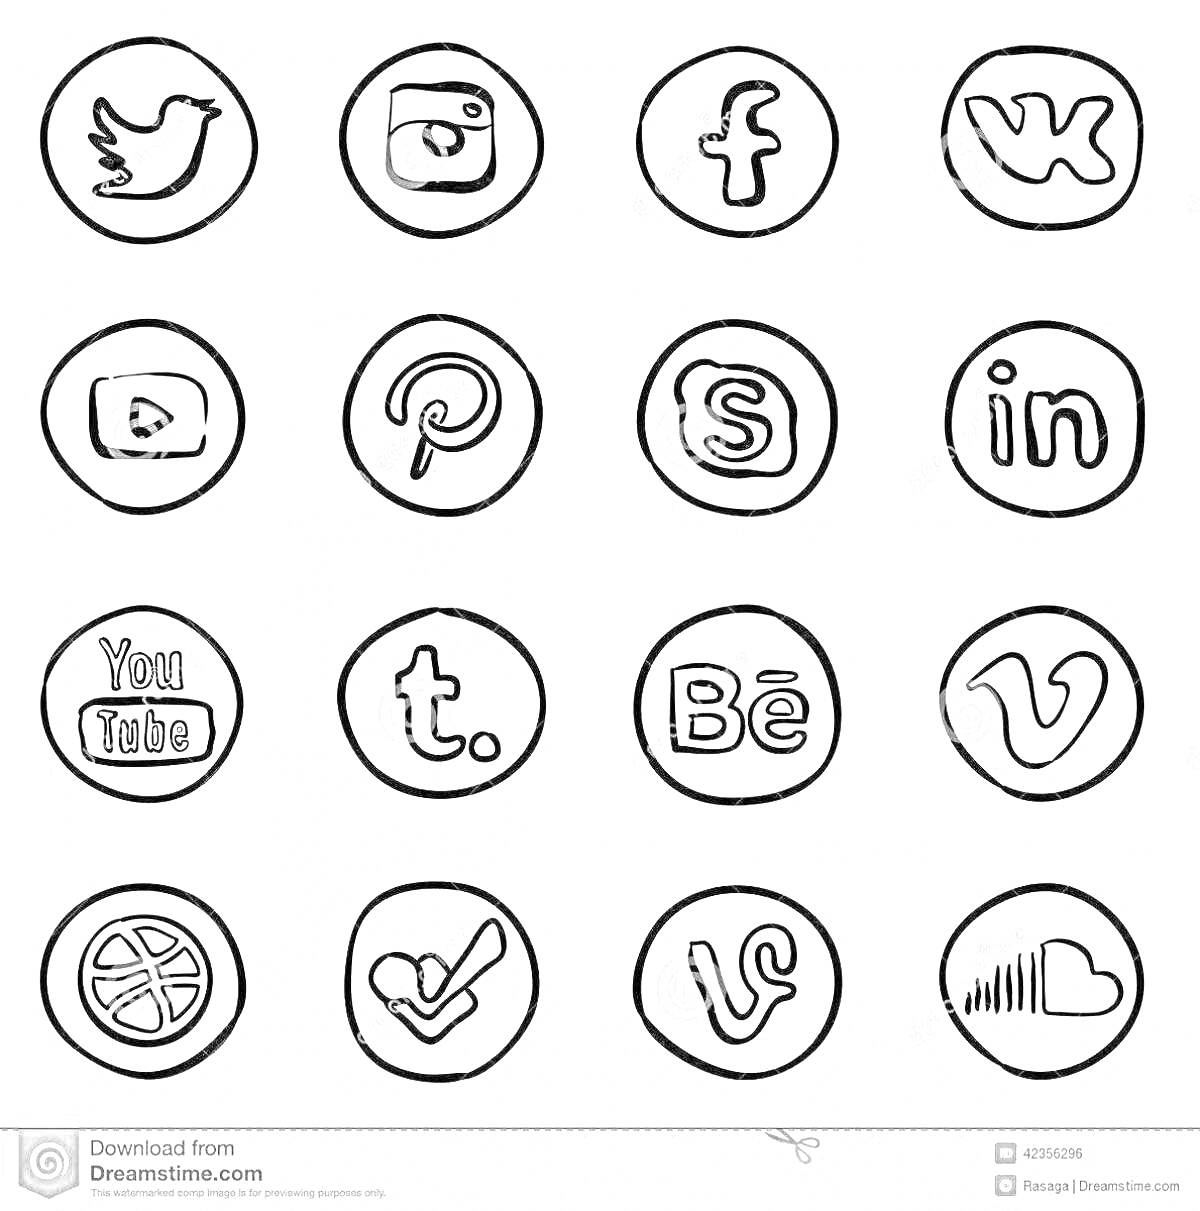 Логотипы социальных сетей, нарисованные в контуре круга. Логотипы включают следующие соцсети: Twitter, Instagram, Facebook, VK (ВКонтакте), YouTube, Pinterest, Skype, LinkedIn, Tumblr, Behance, Vimeo, Dribbble, Foursquare, Vine, SoundCloud.